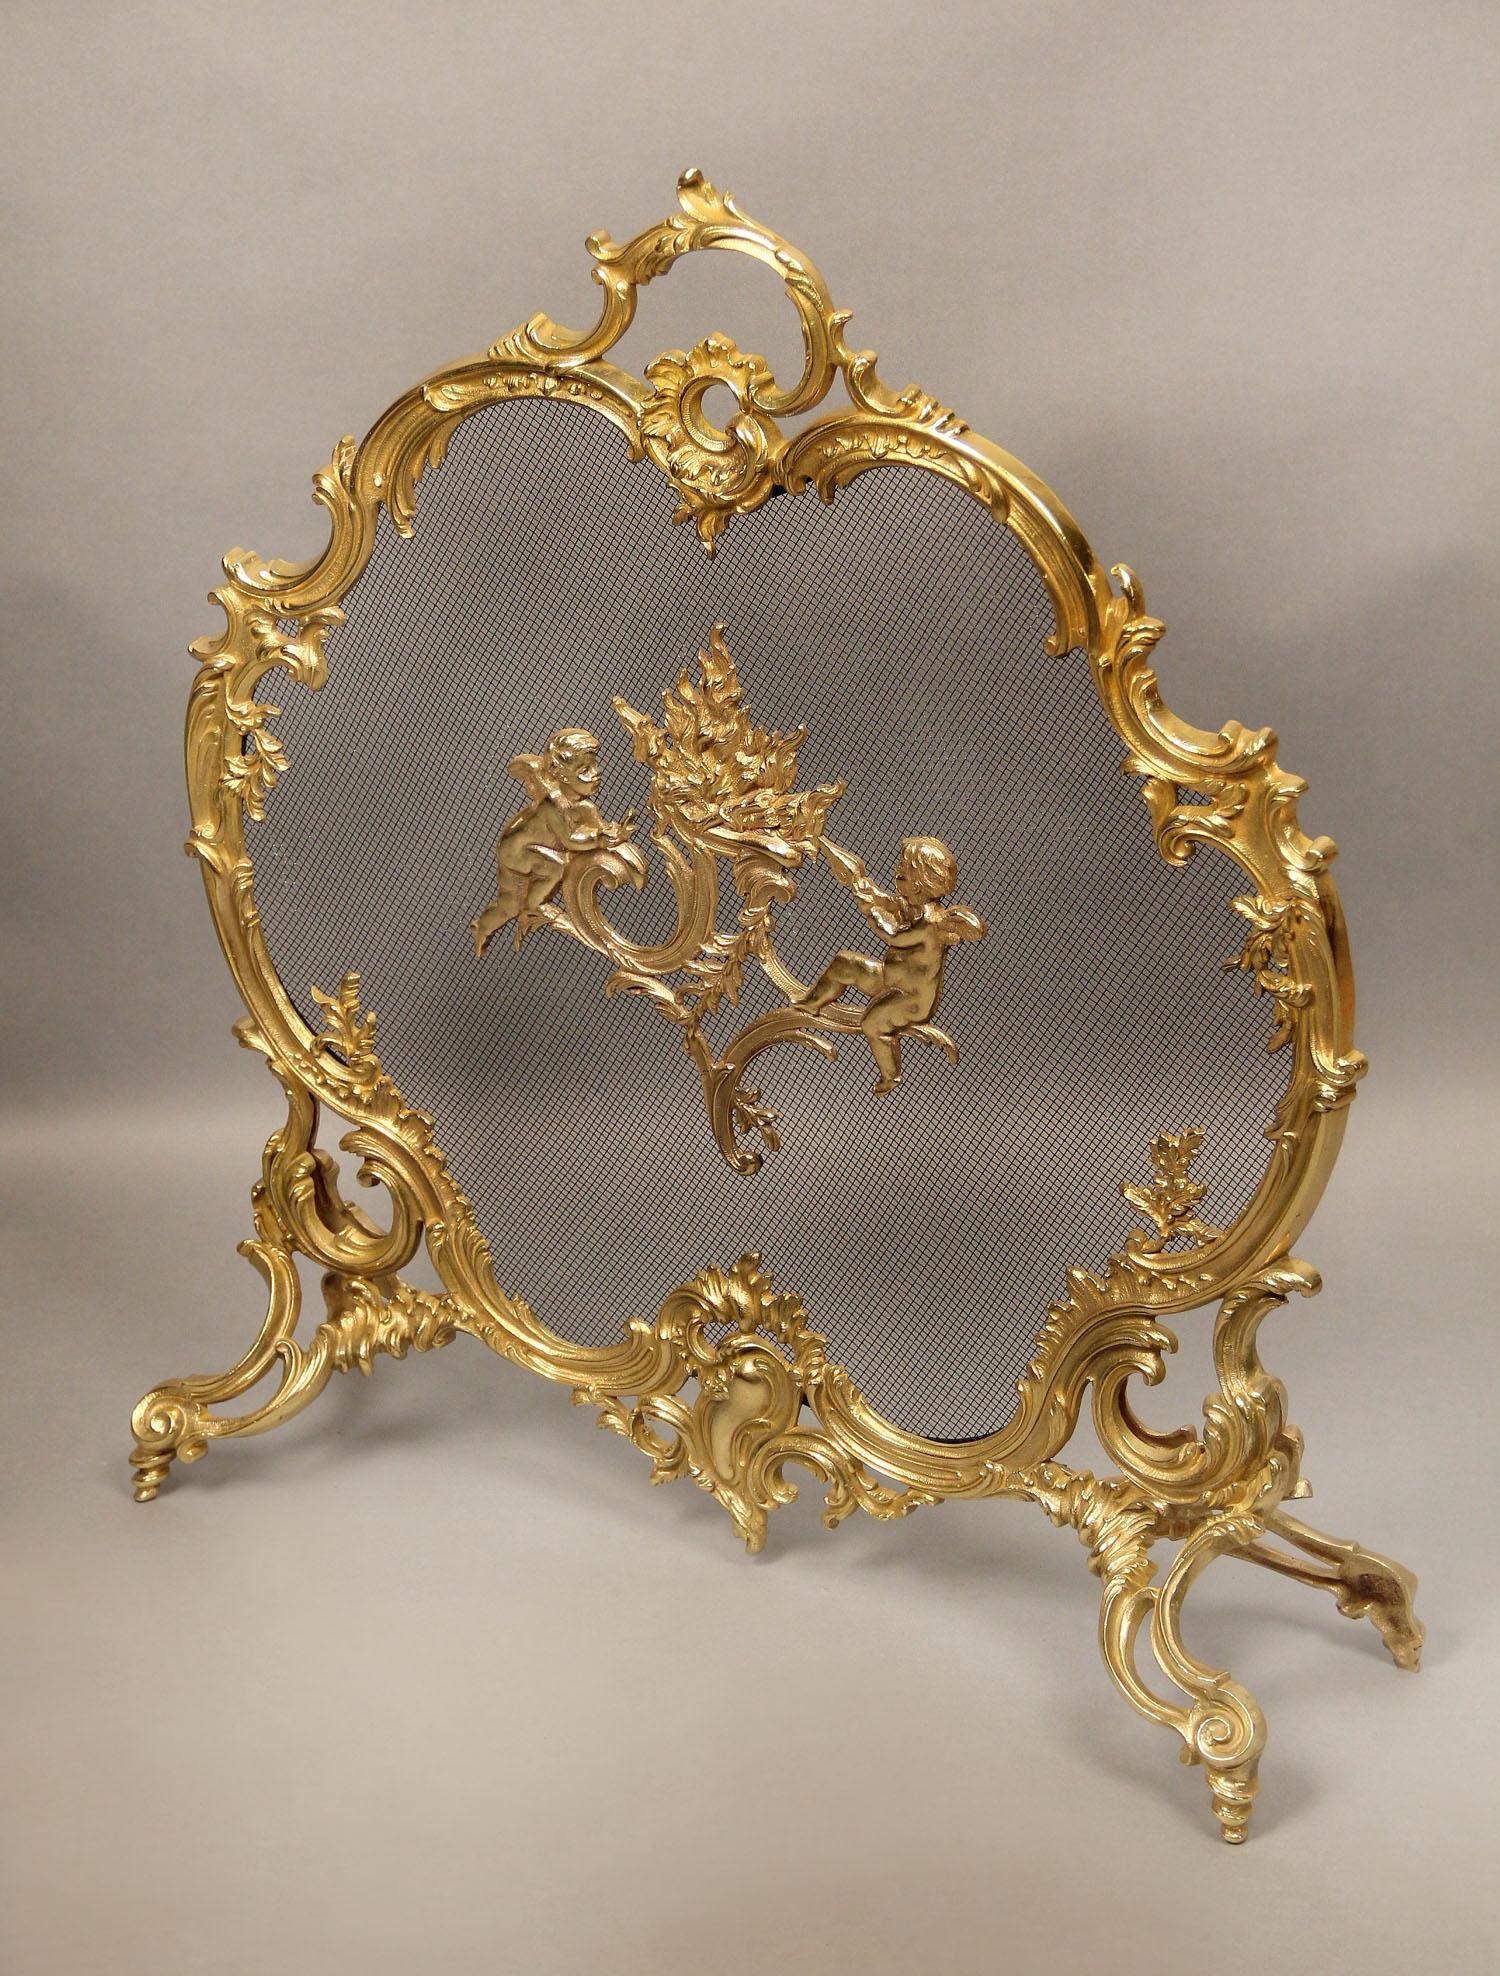 Schöner Kaminschirm aus vergoldeter Bronze aus dem späten 19.

Der ovale Rokokorahmen aus Bronze mit Putten in der Mitte, die eine Flamme fächeln, steht auf vier Spiralfüßen.